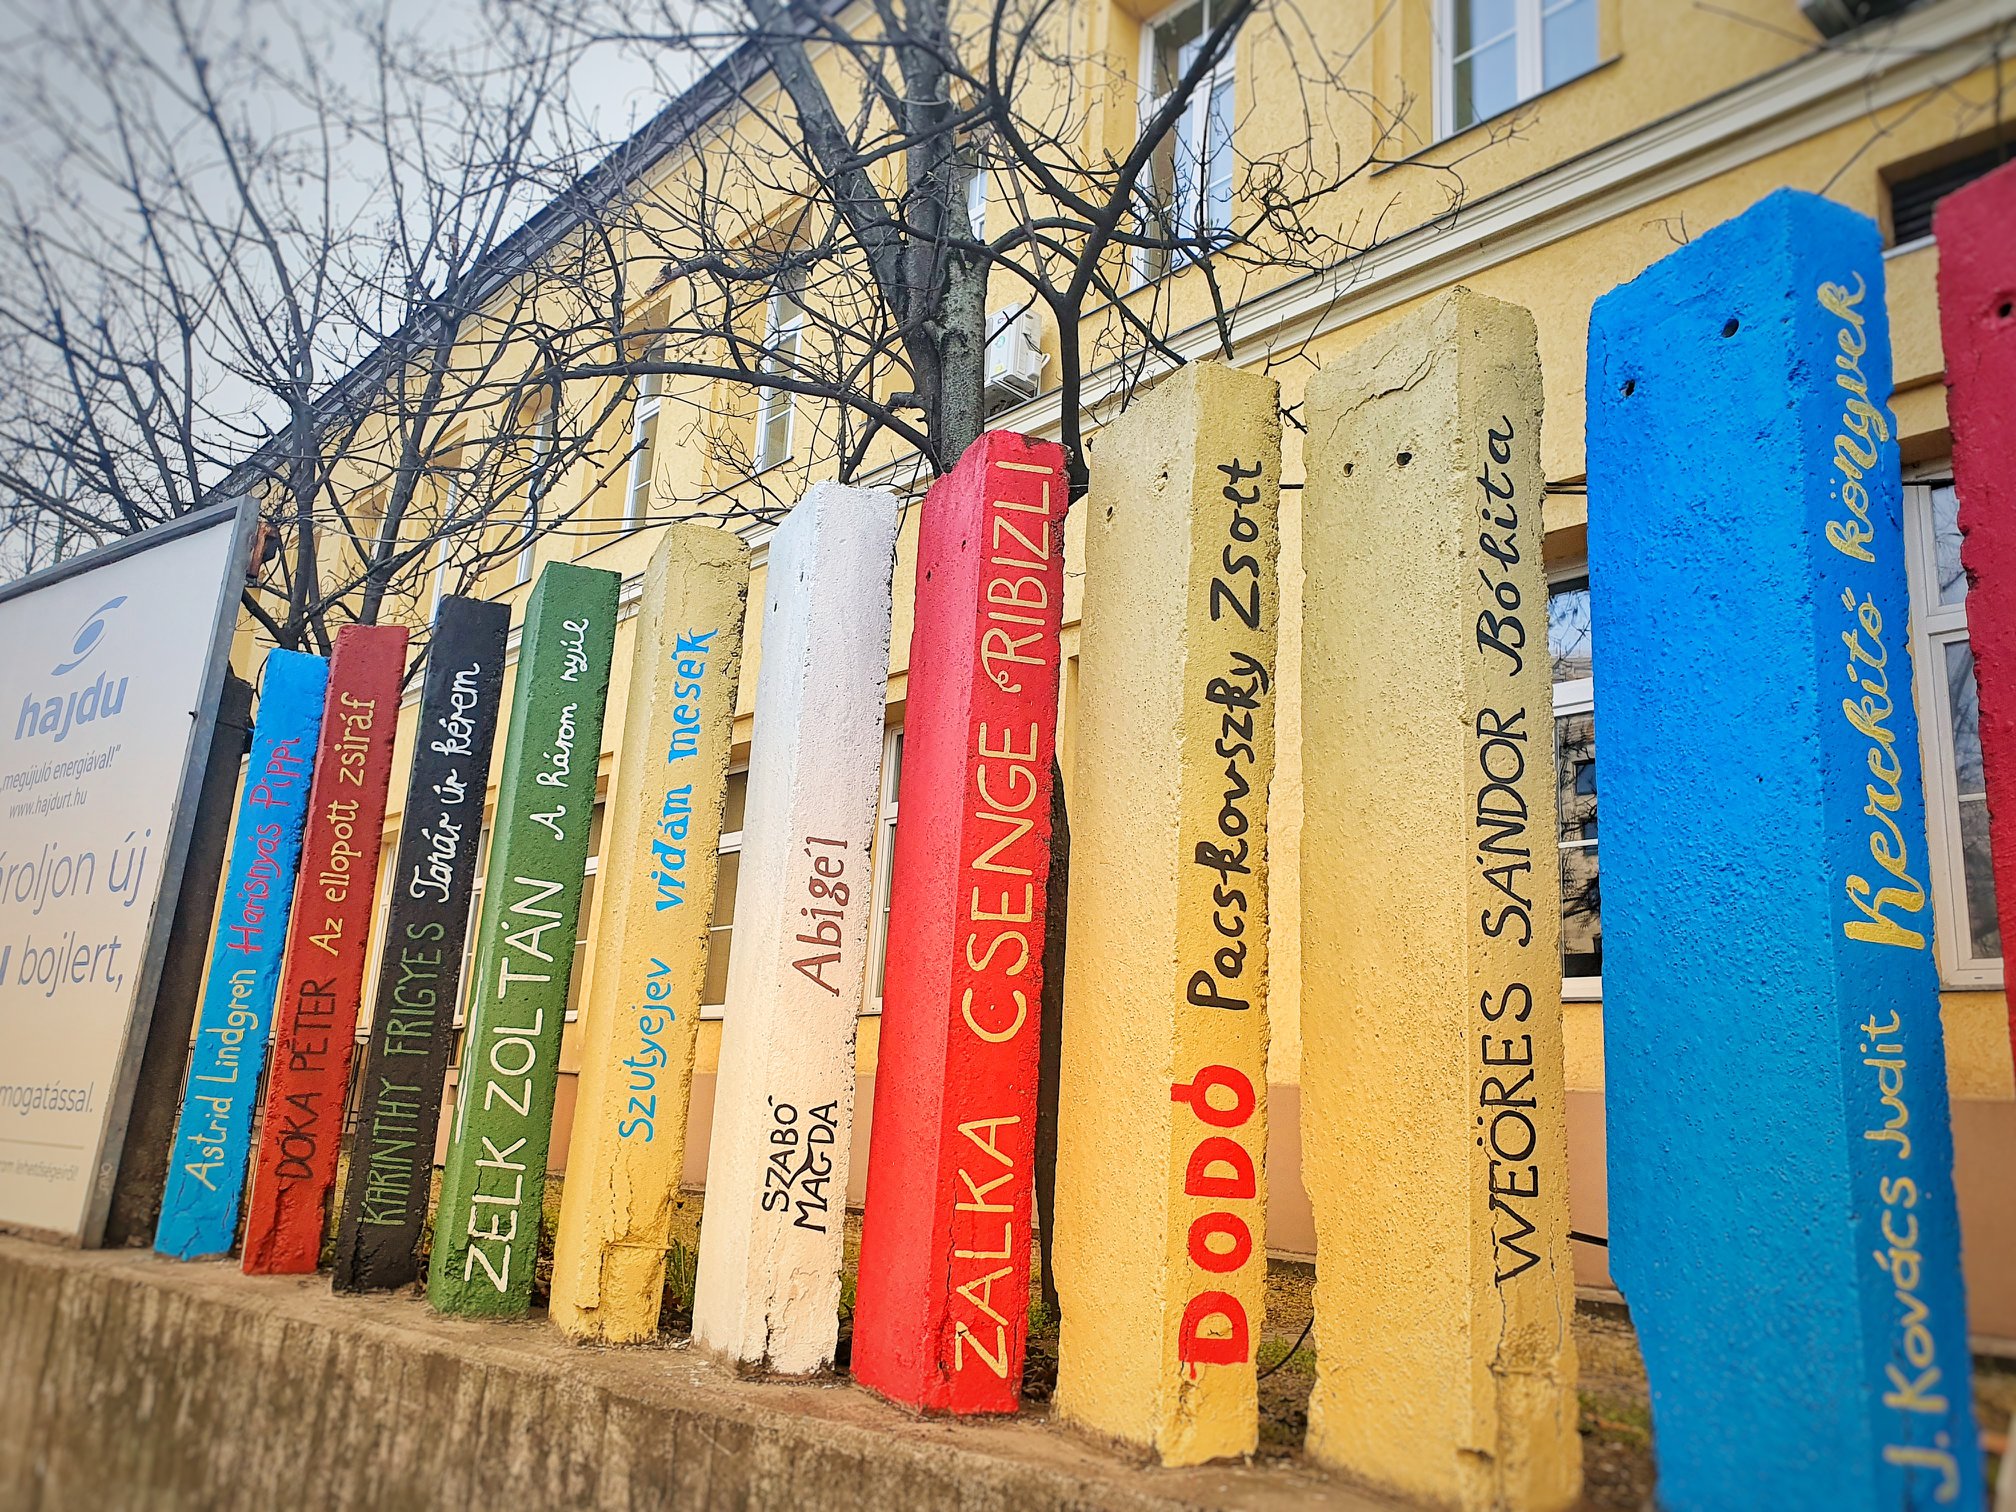 Gigantikus könyvespolccá változott a Bethesda Gyermekkórház kerítése